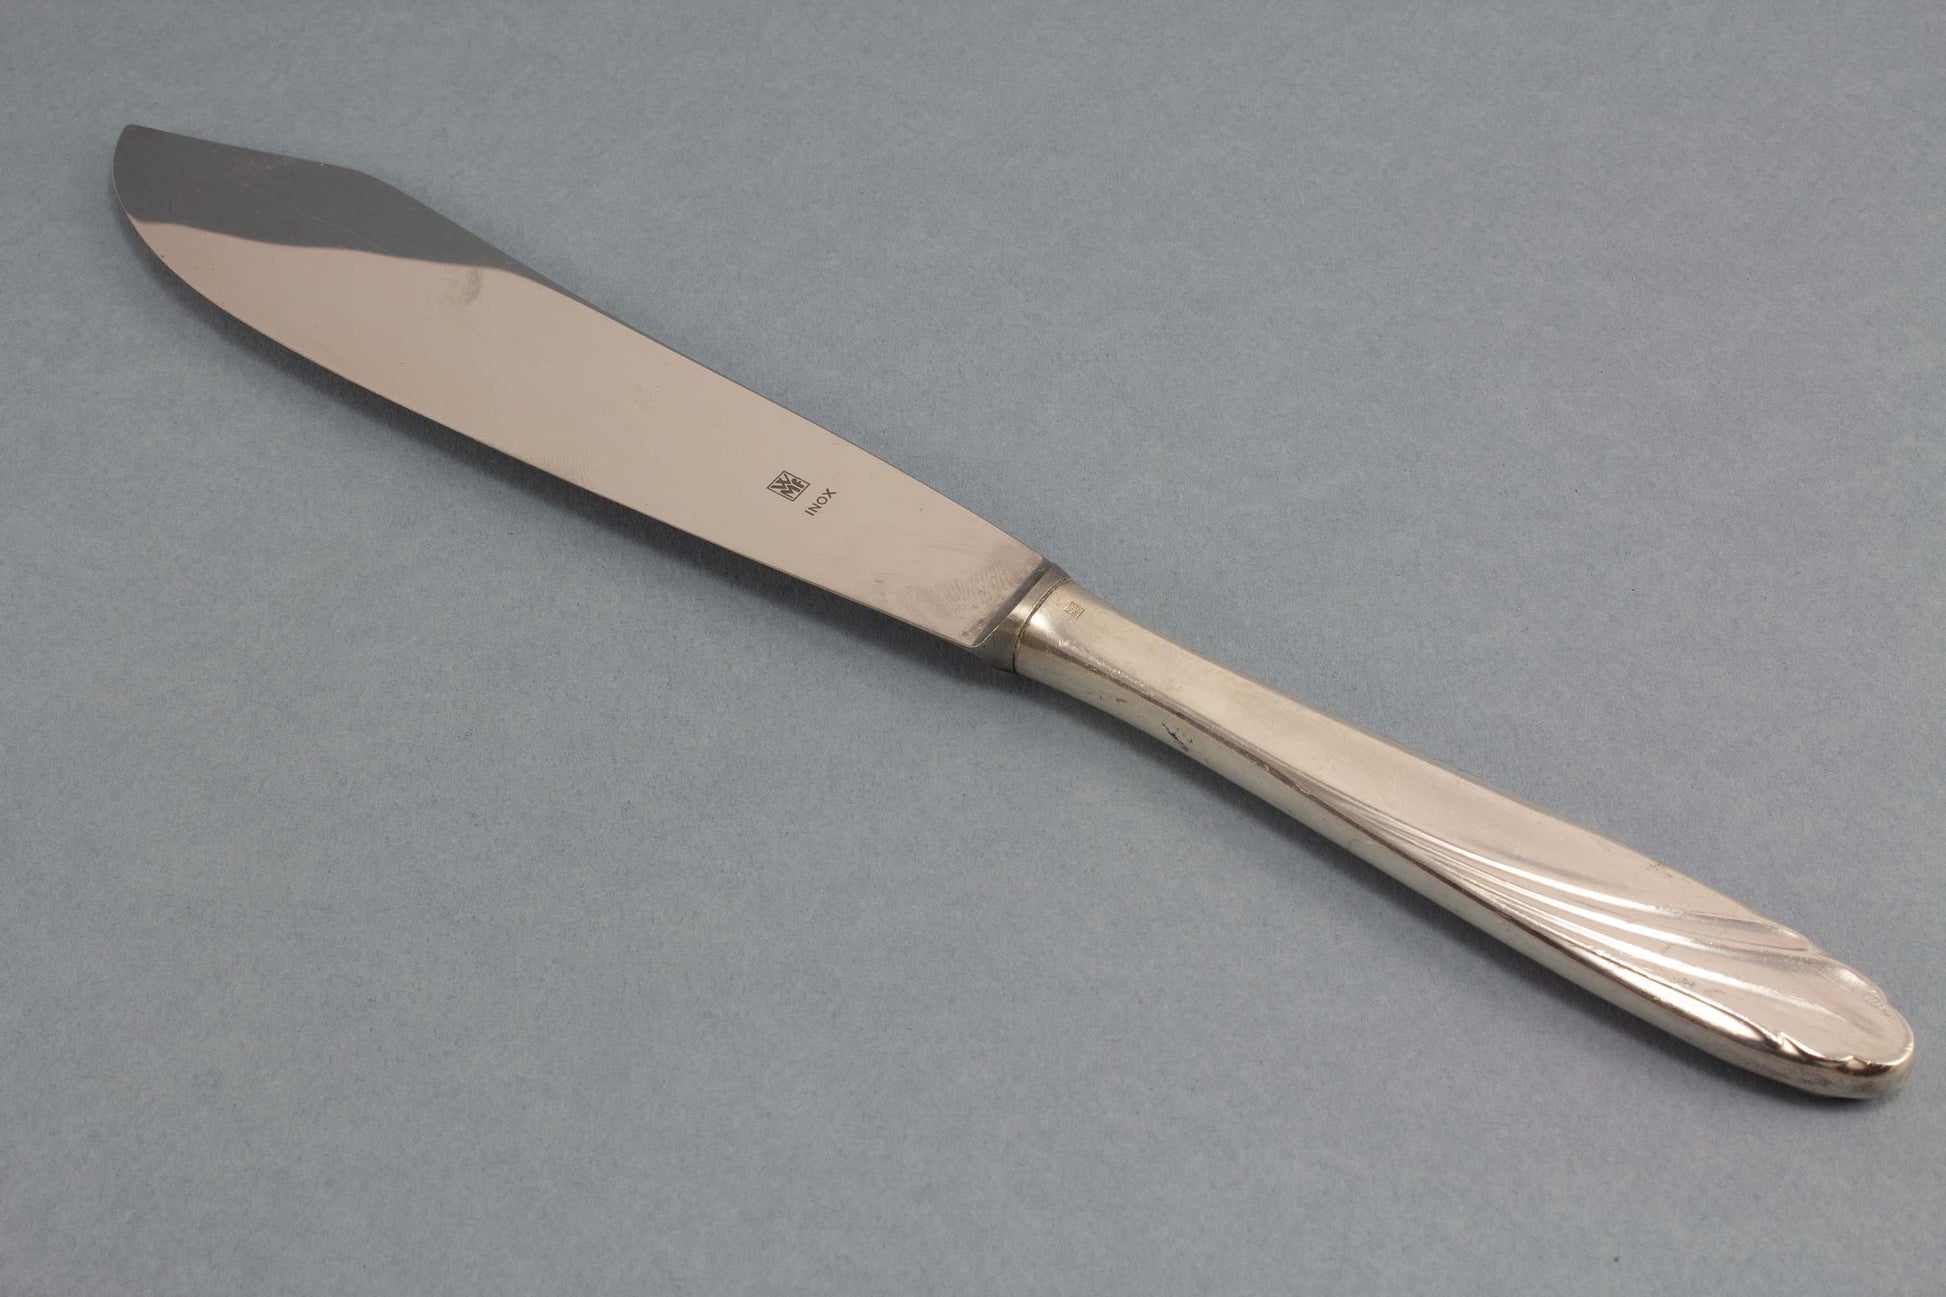 Versilbertes Tortenmesser von WMF, Vintage Messer für die Hochzeitstorte, WMF Wien